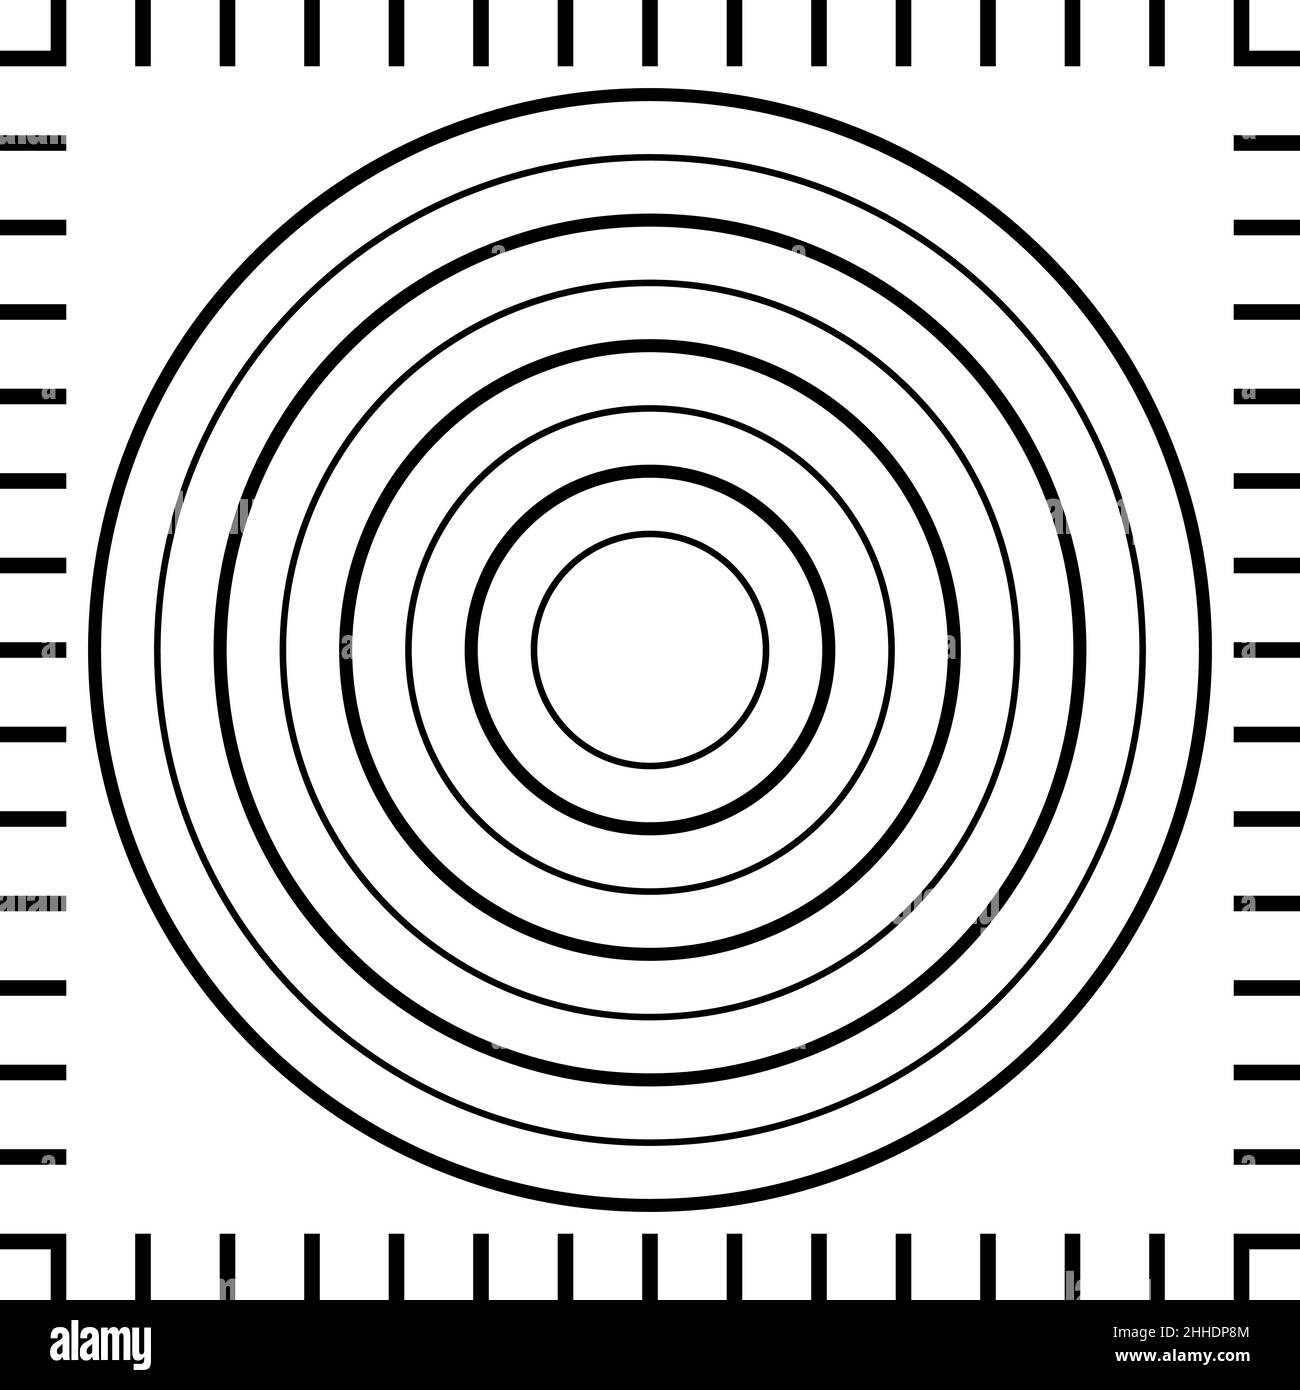 Modèle de tapis pour la préparation de pizzas, illustration du stock de tapis de règle pour pizzas Illustration de Vecteur